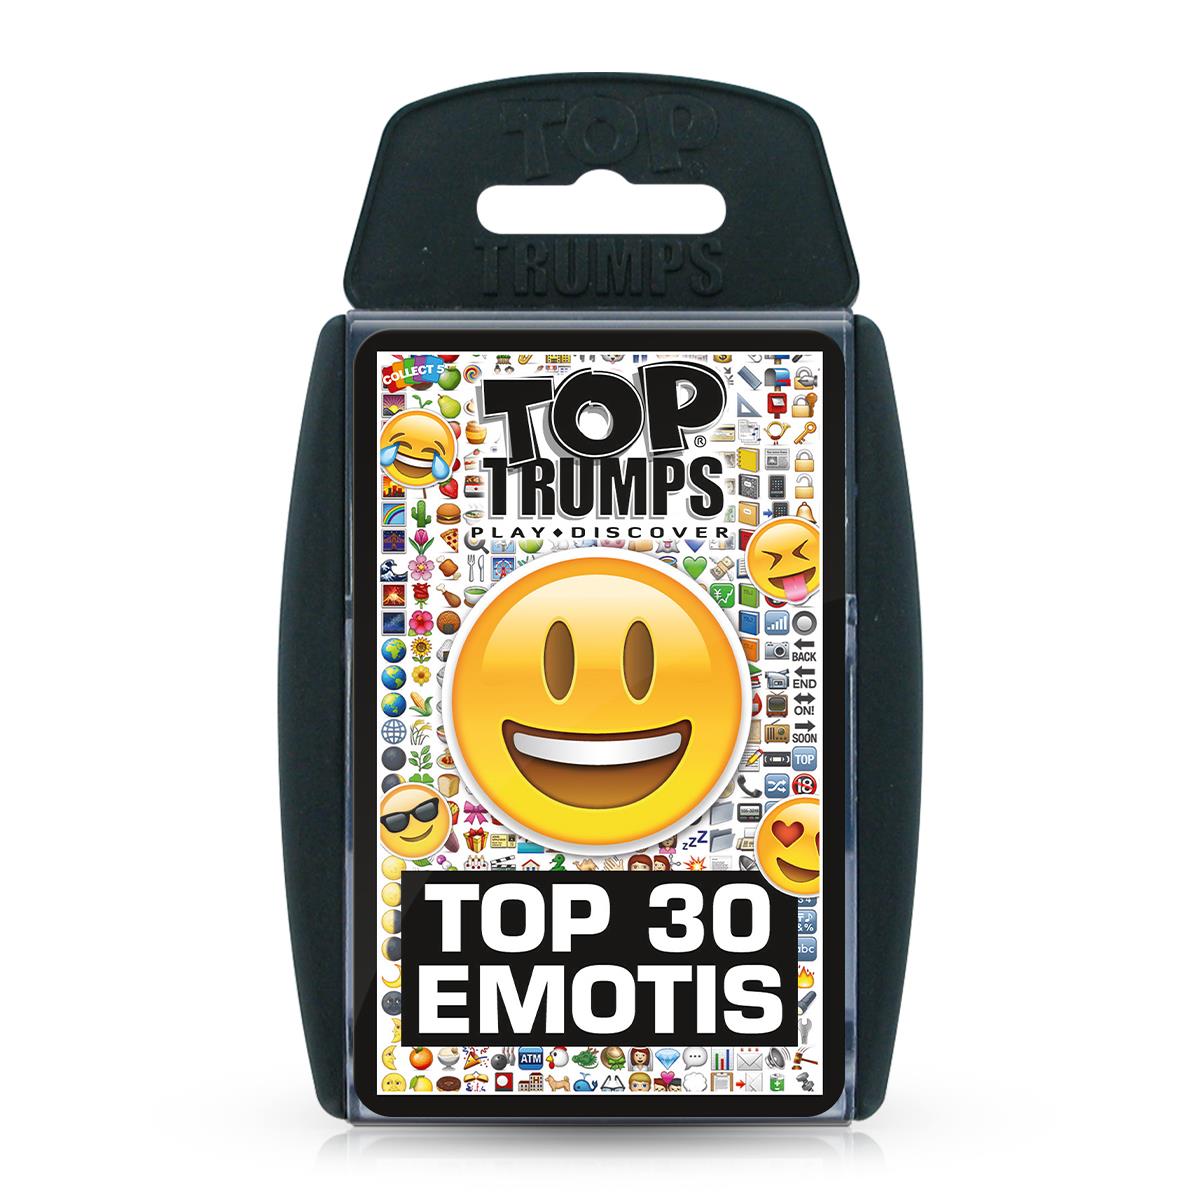 Top 30 Emotis Top Trumps Card Game